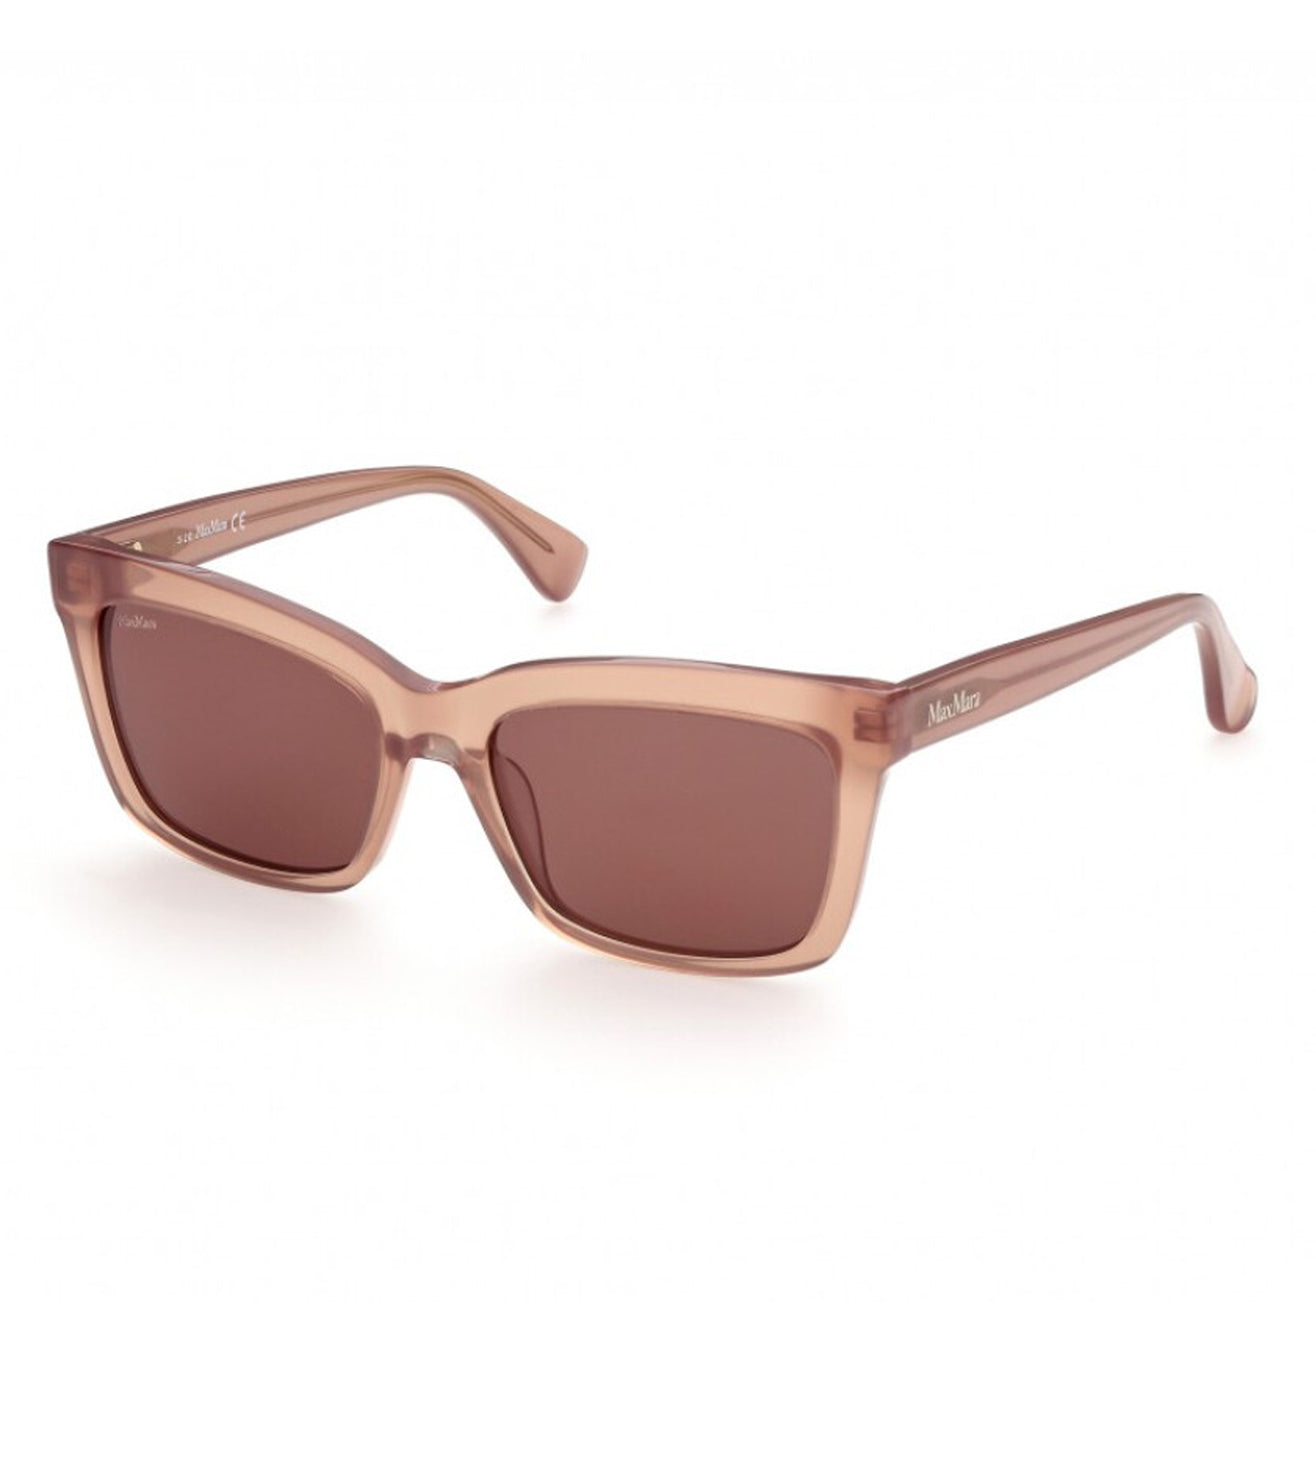 Max Mara Women's Brown Square Sunglasses